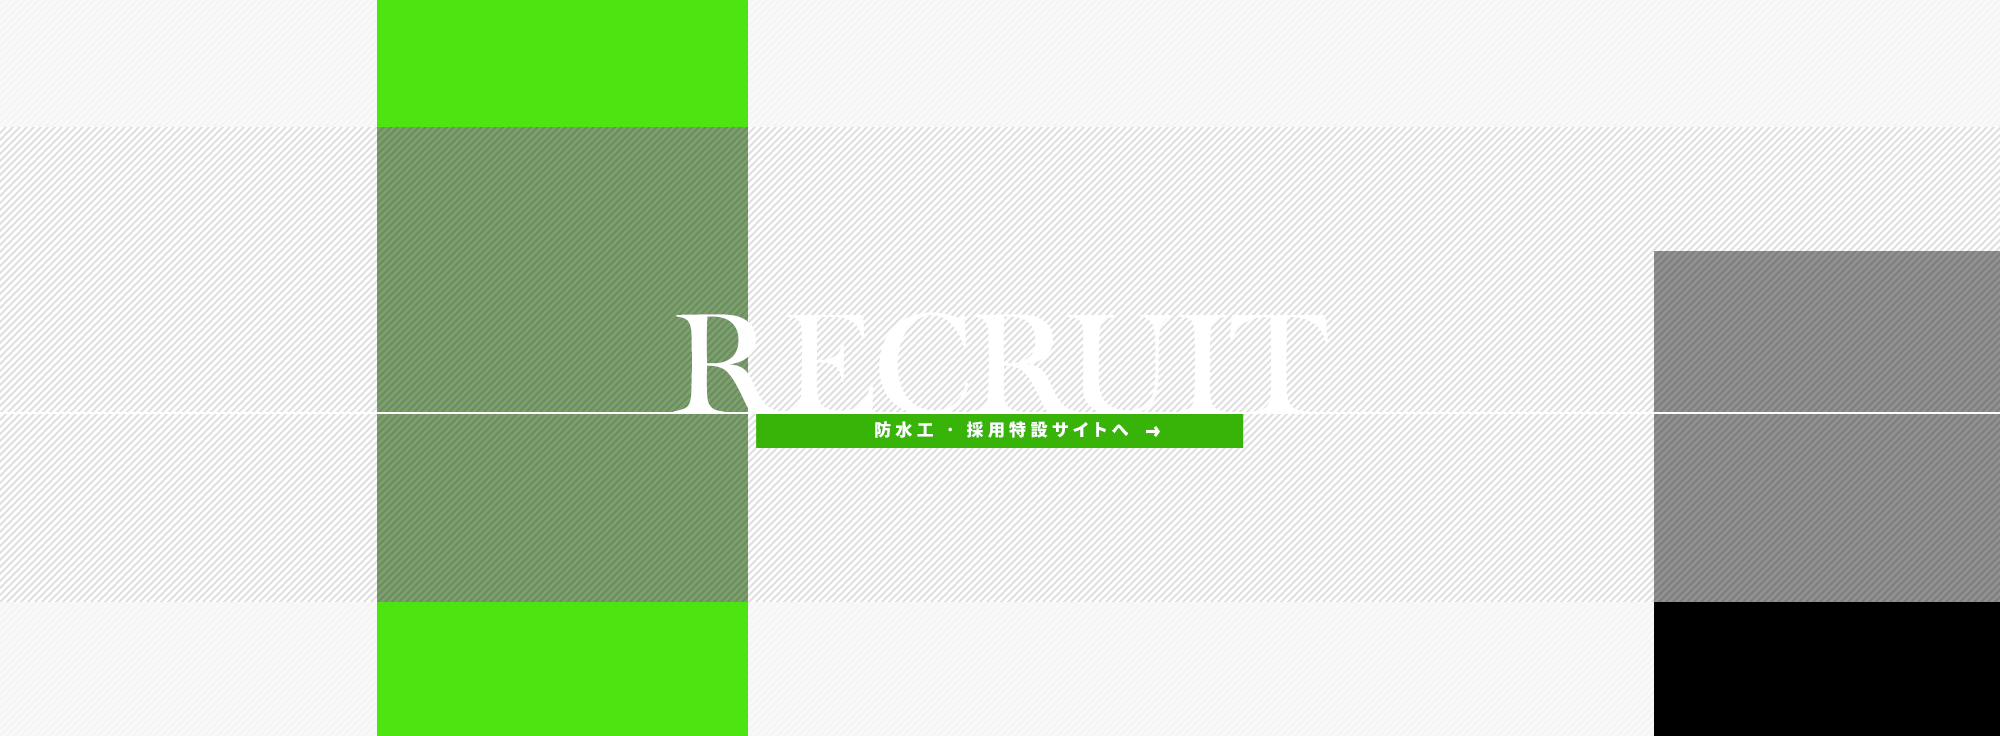 _bnr_recruit_f